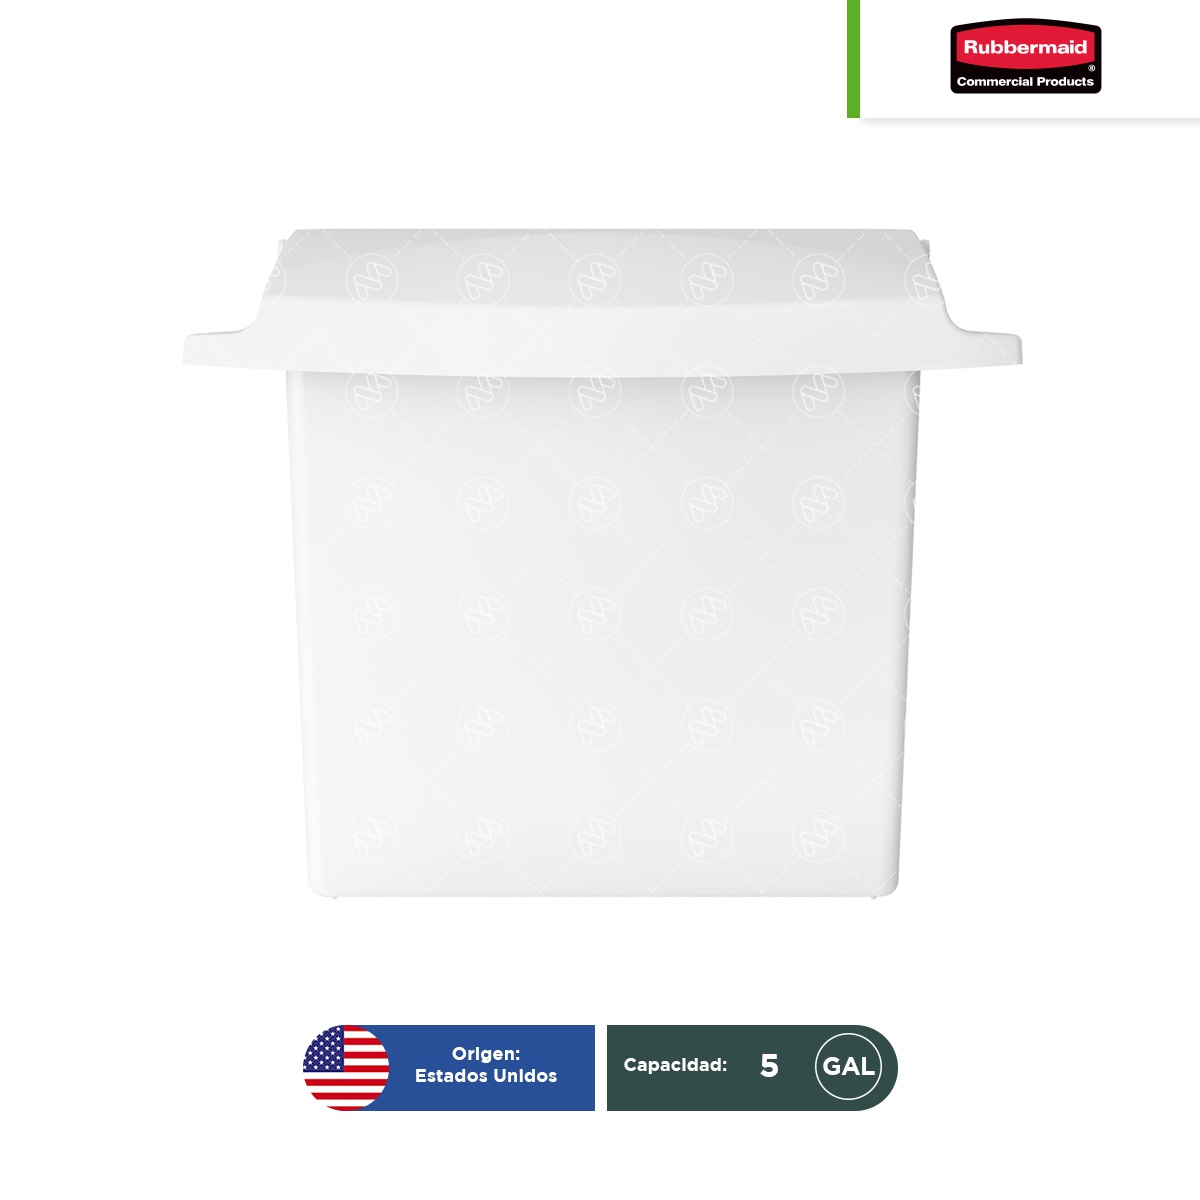 receptaculo-para-toallas-sanitarias-con-forro-rigido-rubbermaid-blanco-002.jpg